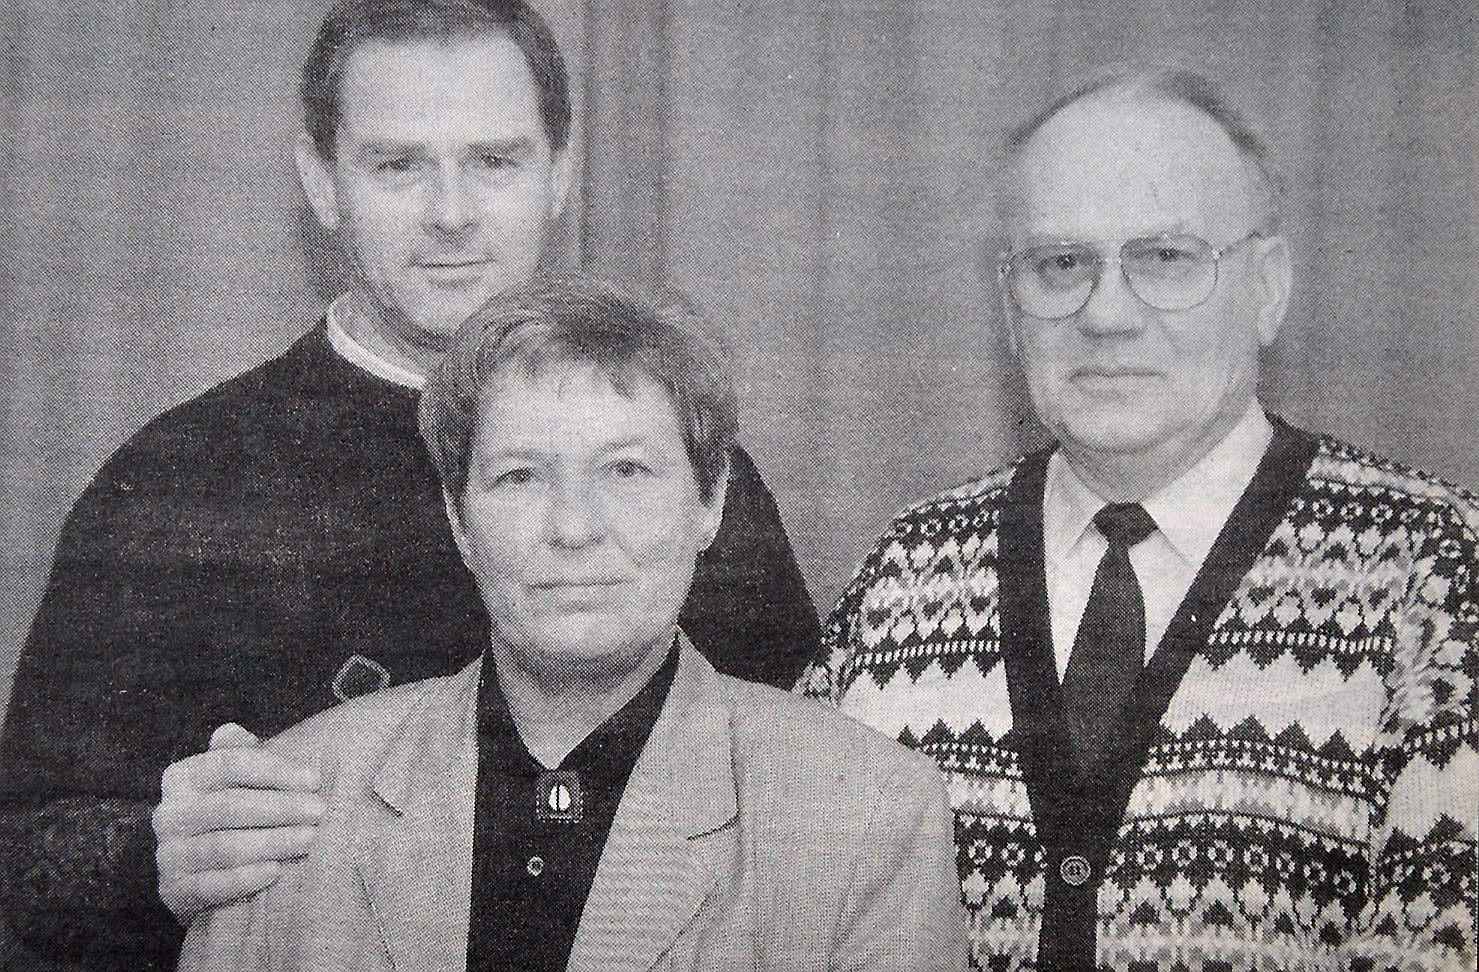 Stig Roos, Lars Hörberg och Birgitta Anzelius, alla veteraner inom hässleholmskorpens styrelse, avgår efter sammanlagt 80 år.
Arkiv: Stefan Sandström